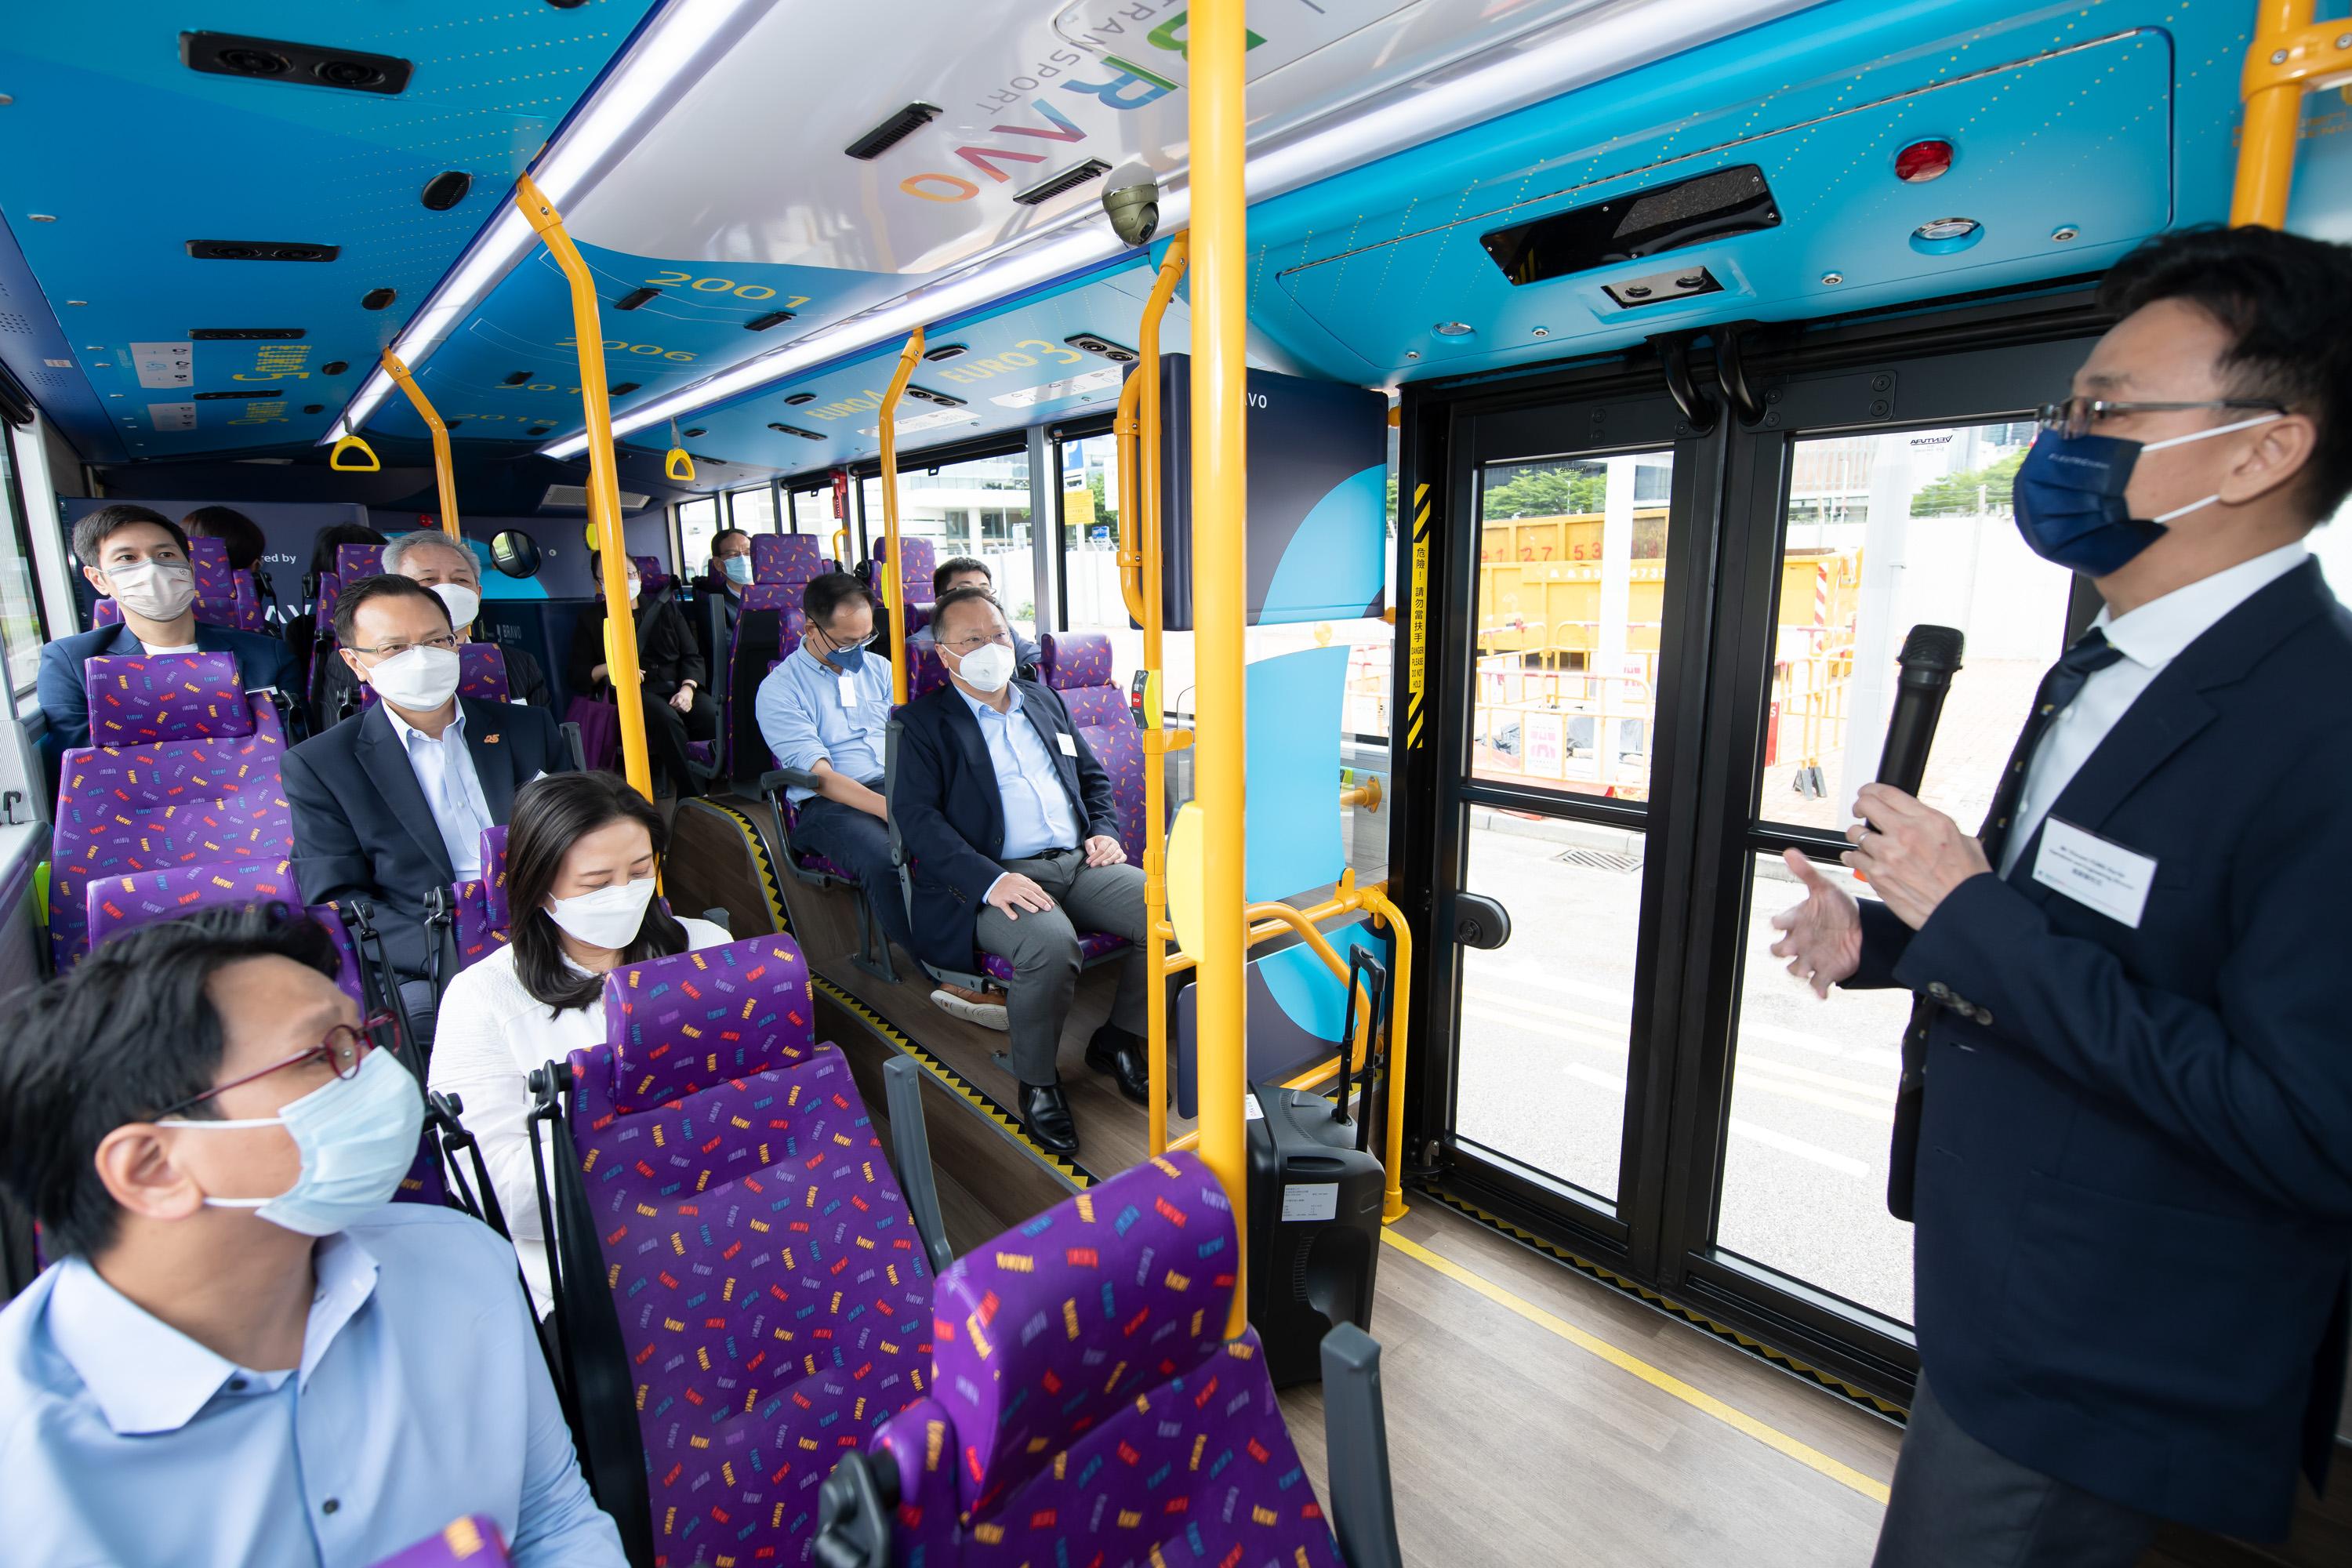 立法会交通事务委员会今日（八月十九日）参观城巴有限公司（城巴）的设施。图示立法会议员乘坐城巴双层电能巴士，藉此体验电能巴士的设备。